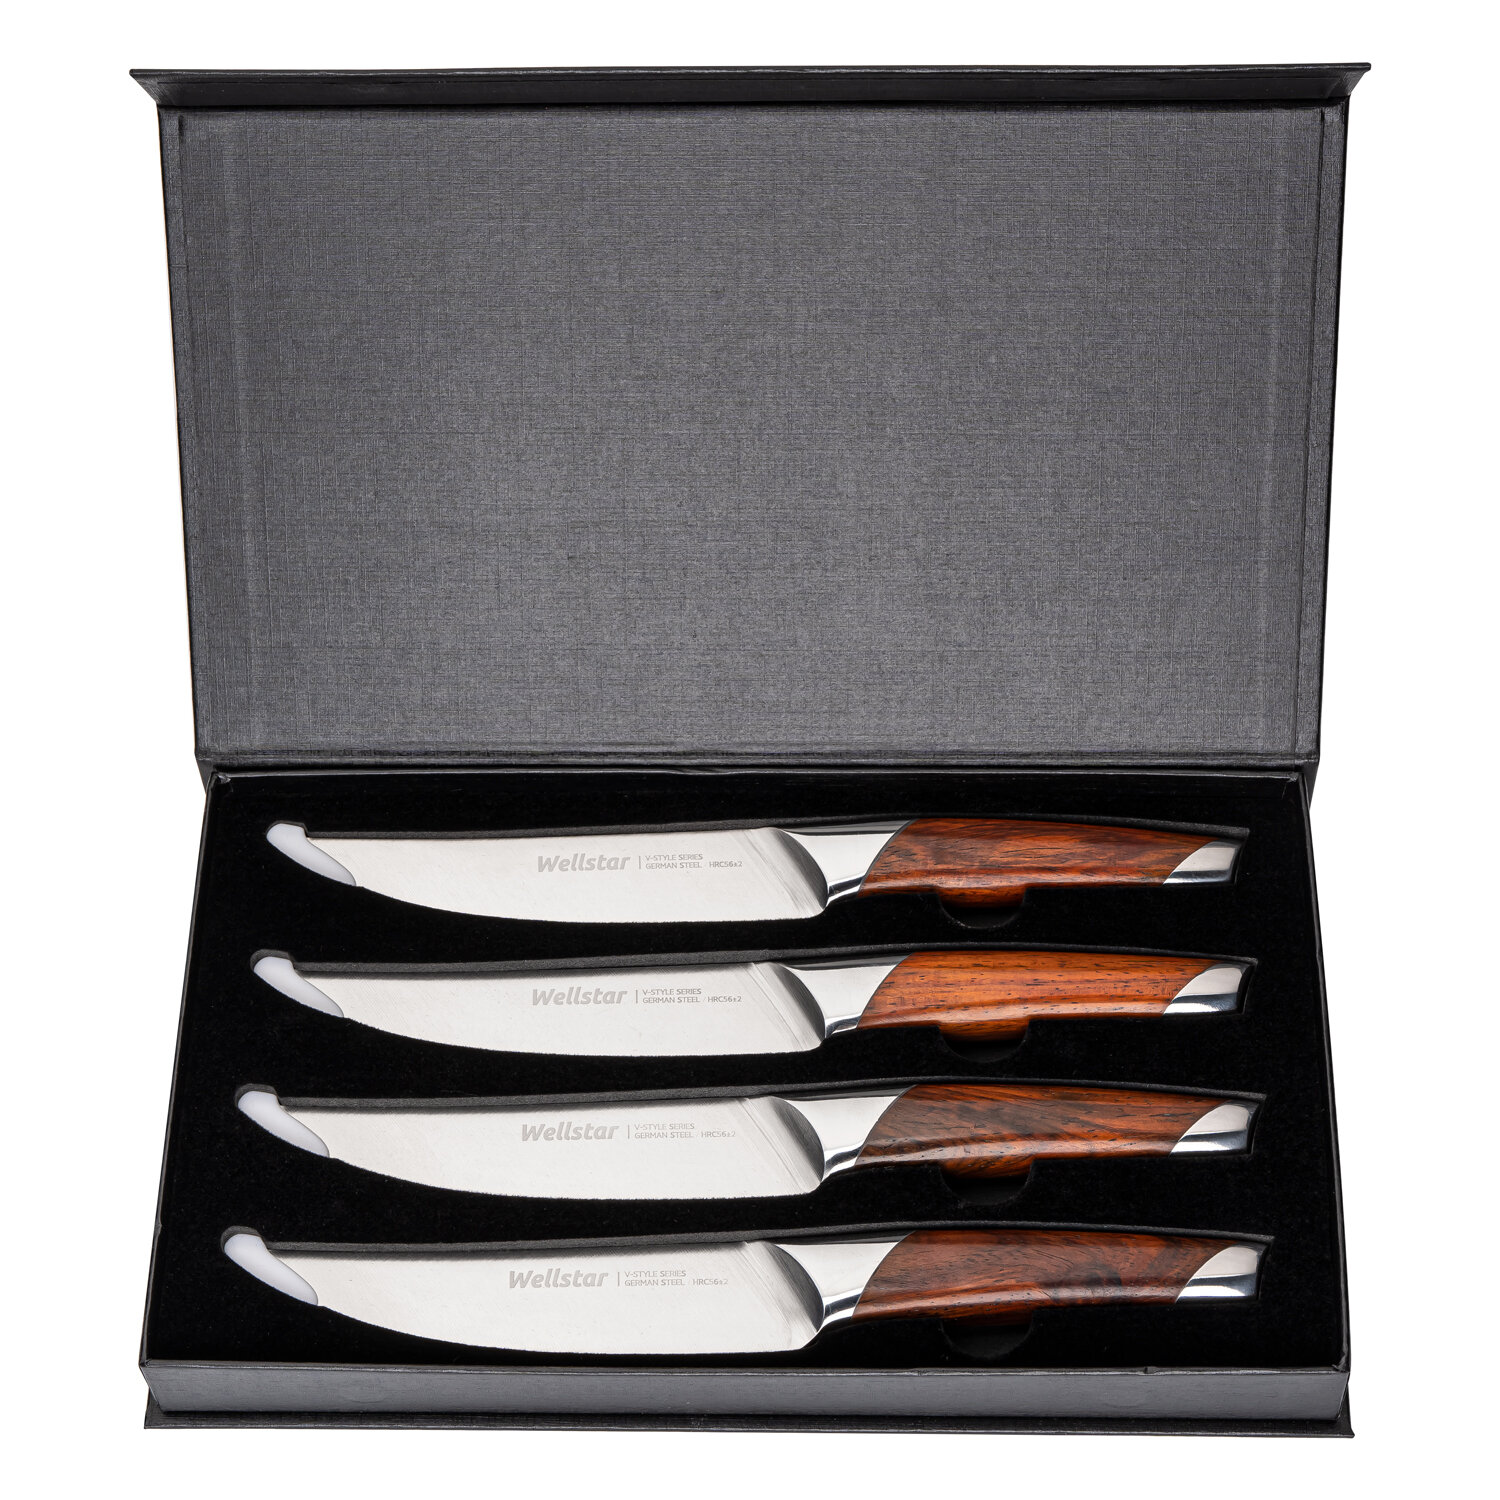 https://assets.wfcdn.com/im/52733117/compr-r85/1604/160492719/wellstar-4-piece-stainless-steel-steak-knife-set.jpg